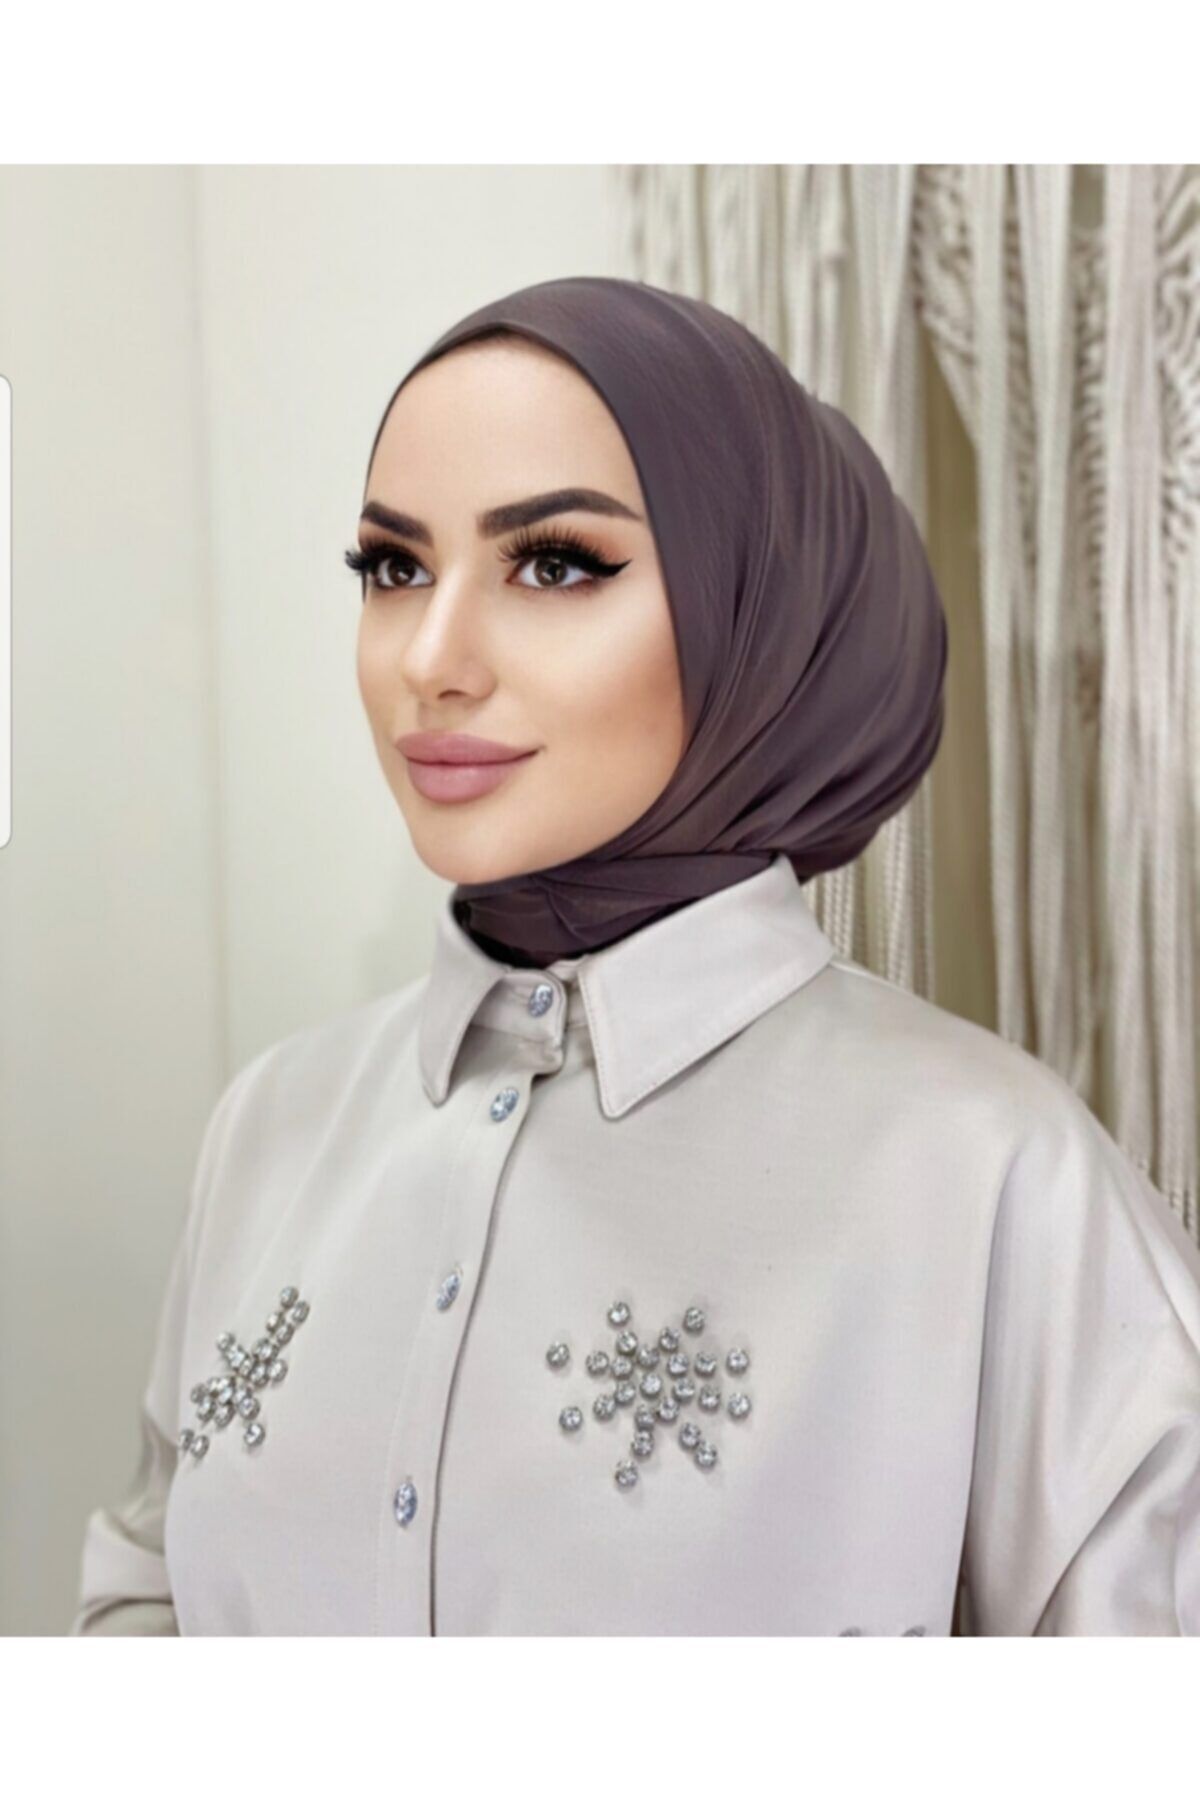 Pamuk Cıtcıtlı Hijab Bone